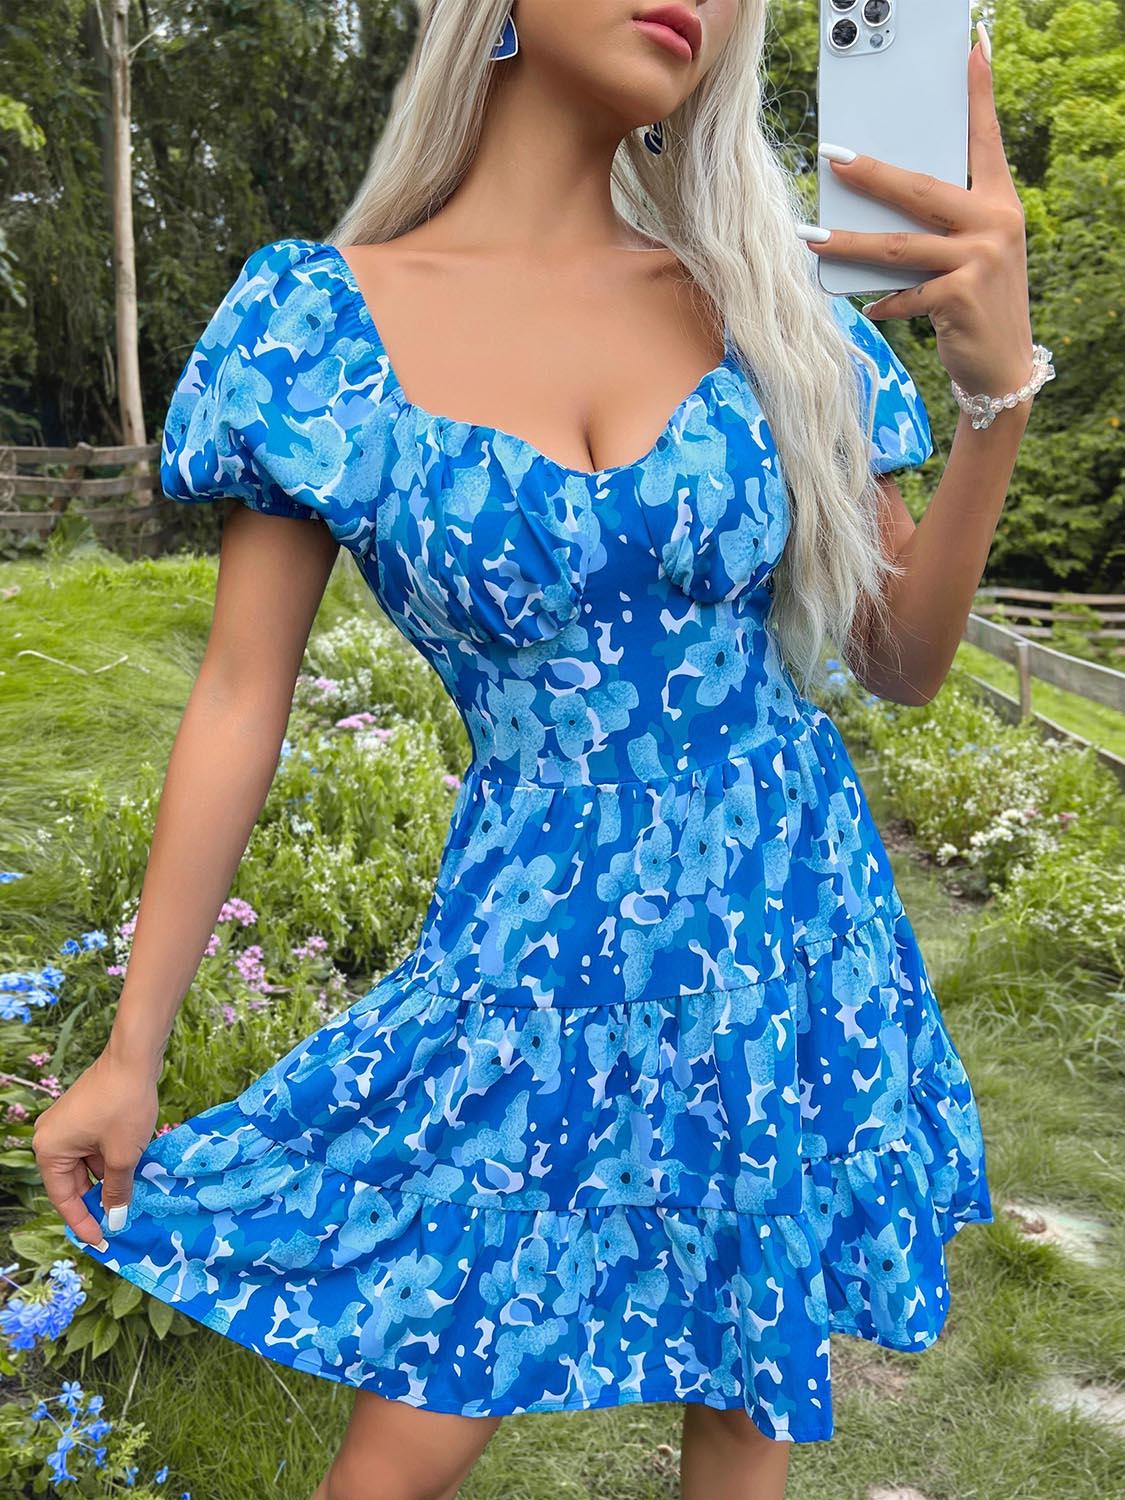 a woman in a blue dress taking a selfie